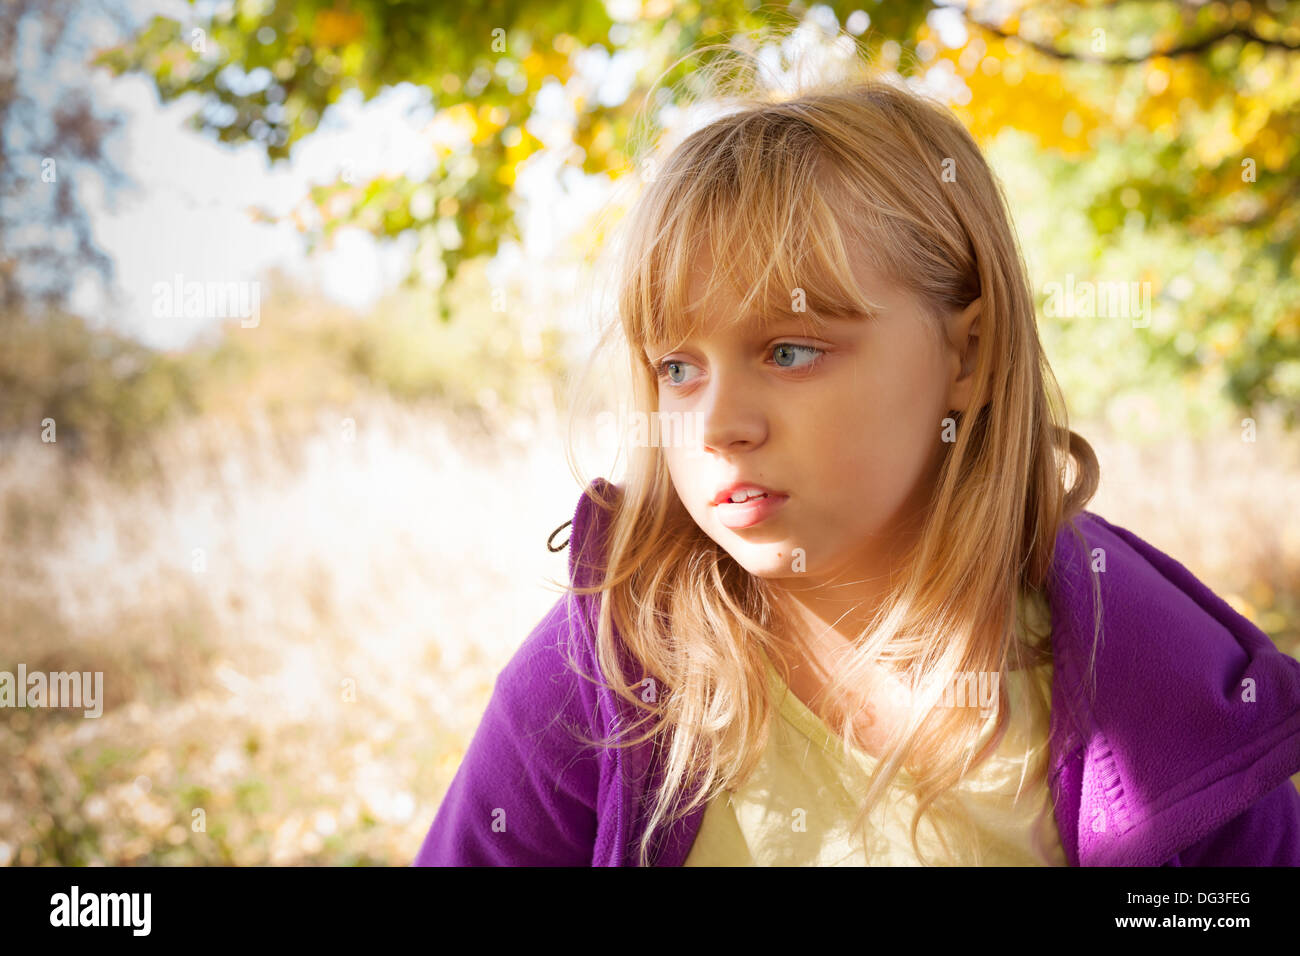 Porträt des blonden Mädchens im Herbst park Stockfoto